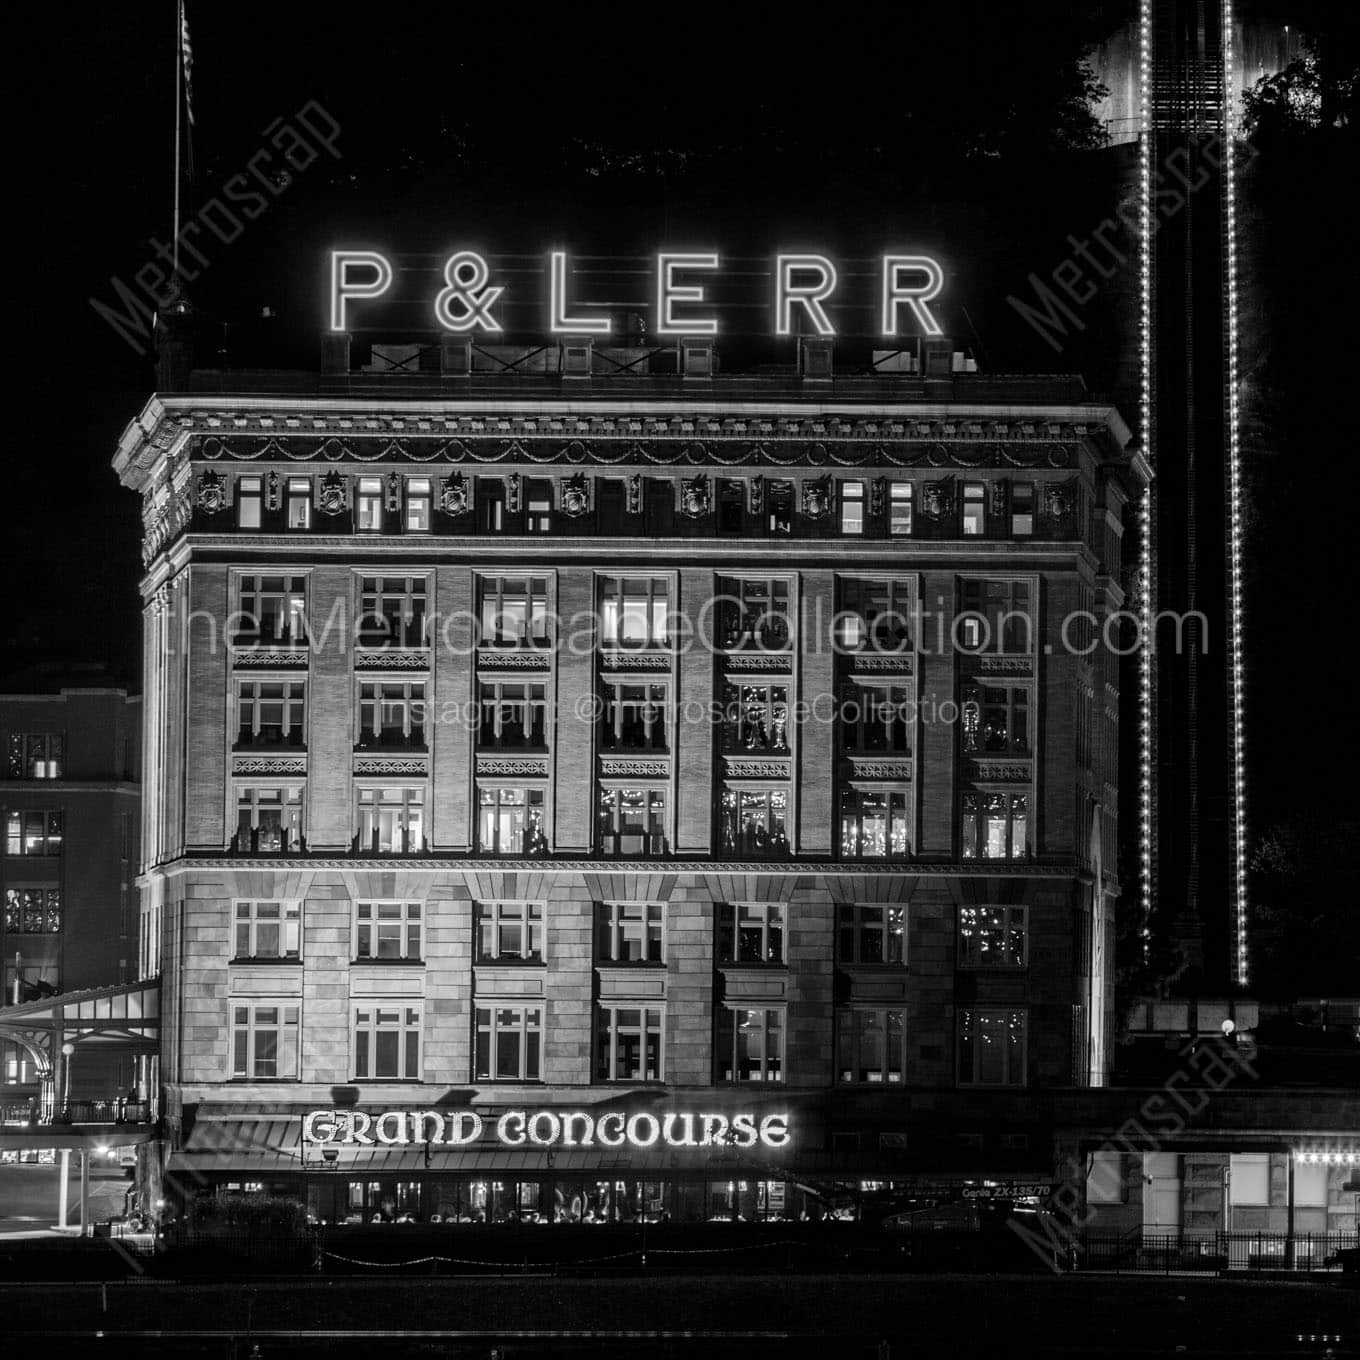 plerr building at night Black & White Office Art